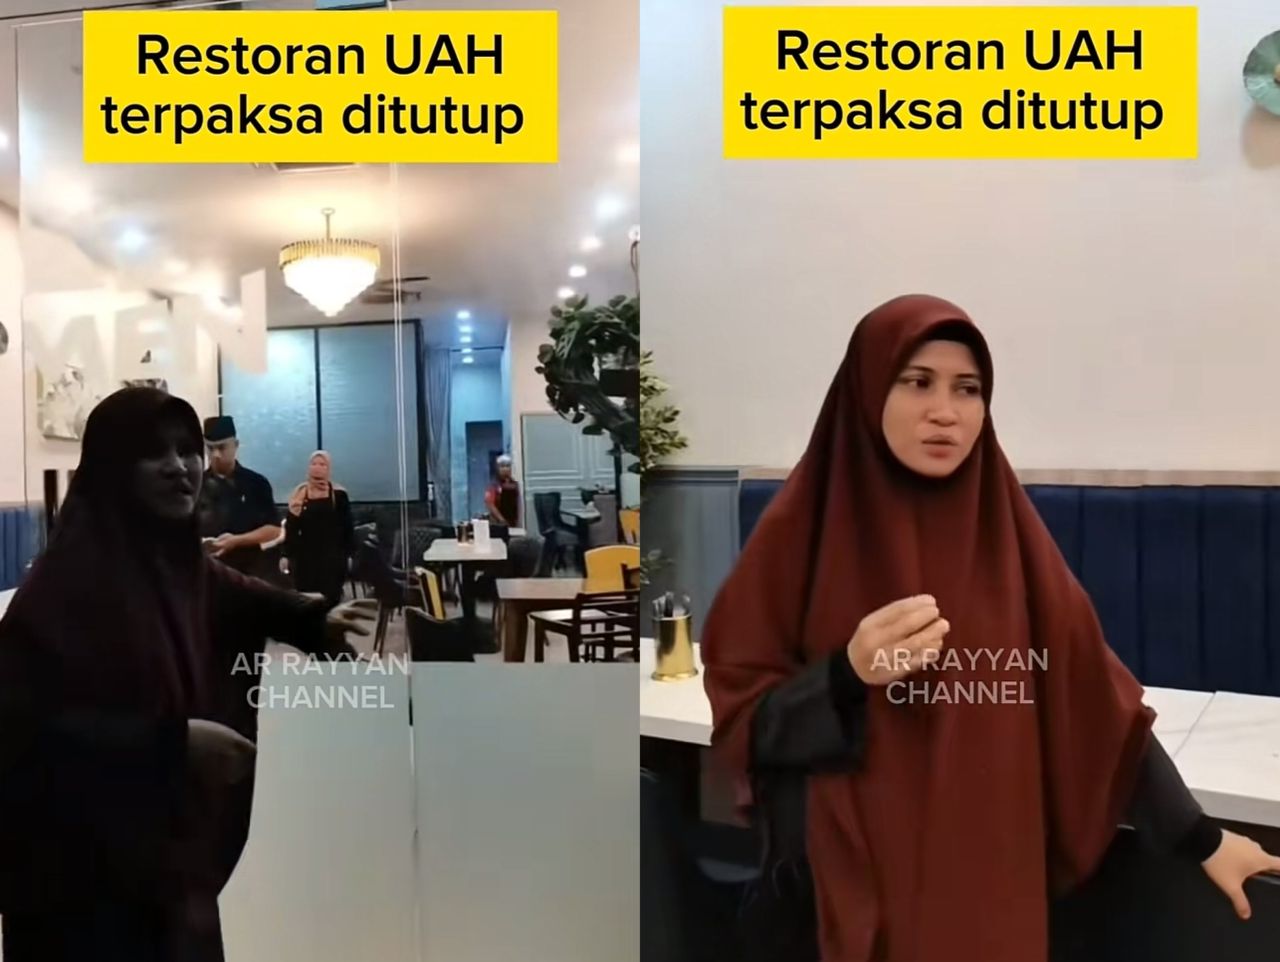 Ustazah Asma' terpaksa tutup kedai, rugi RM30,000 setiap bulan - Kosmo Digital